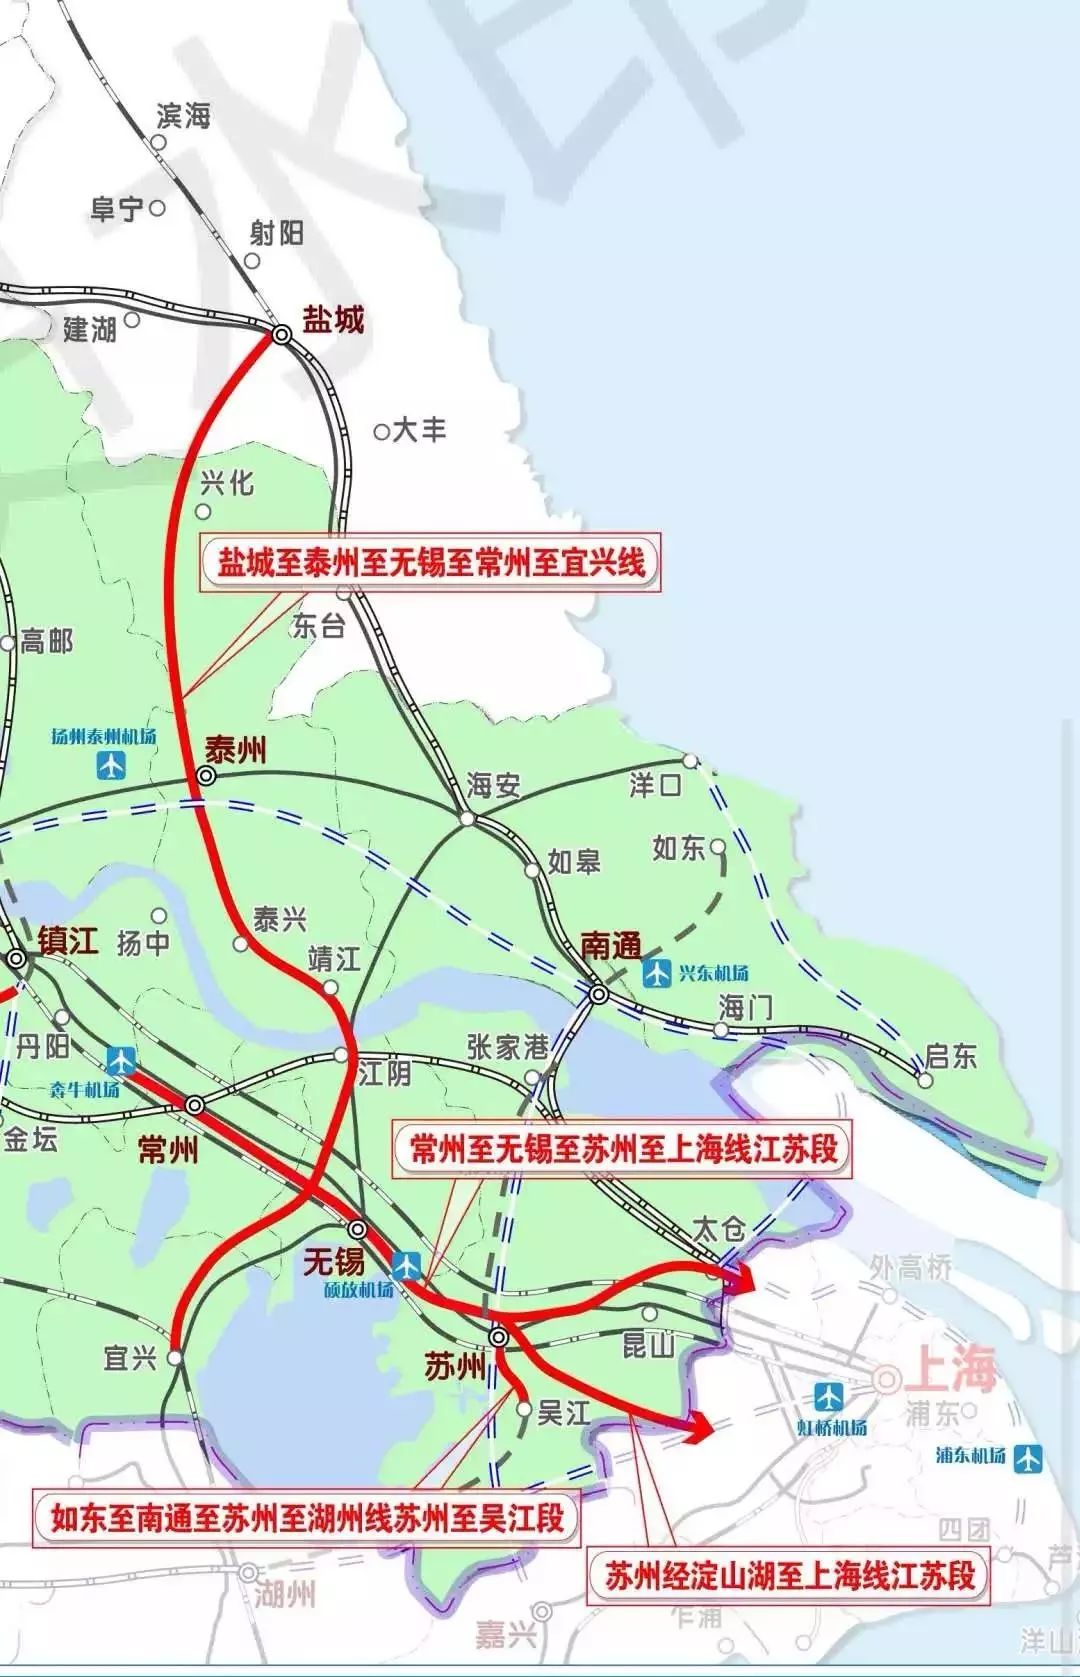 上海和江苏将建苏锡常都市快线,时速160至2